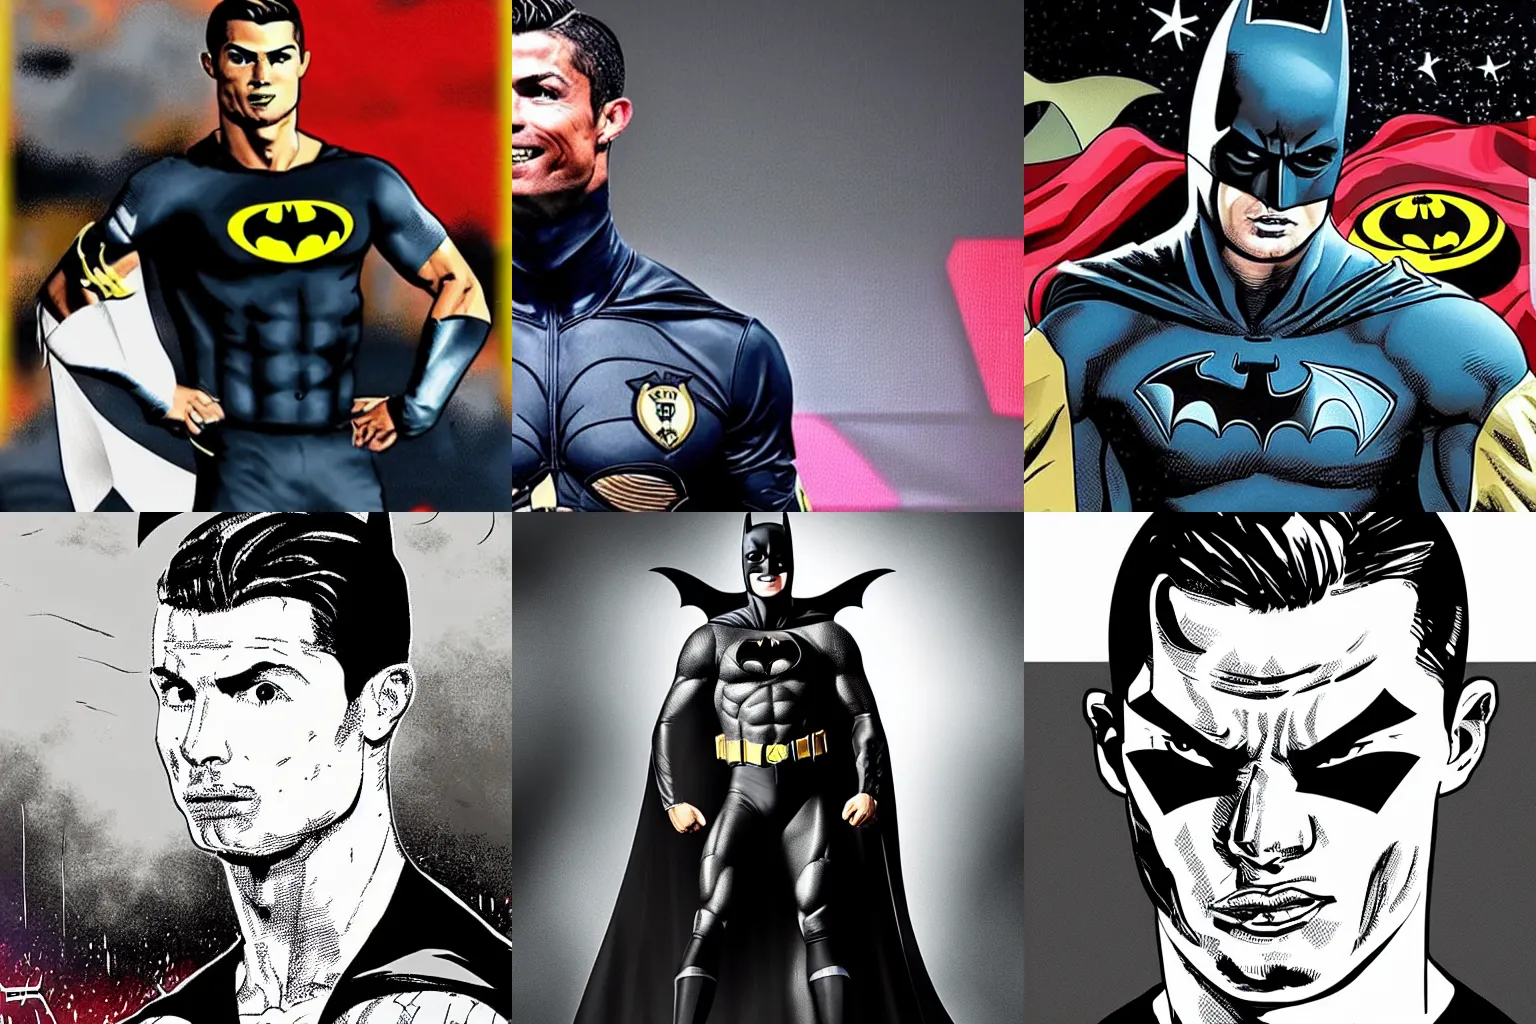 Prompt: Cristiano Ronaldo as Batman